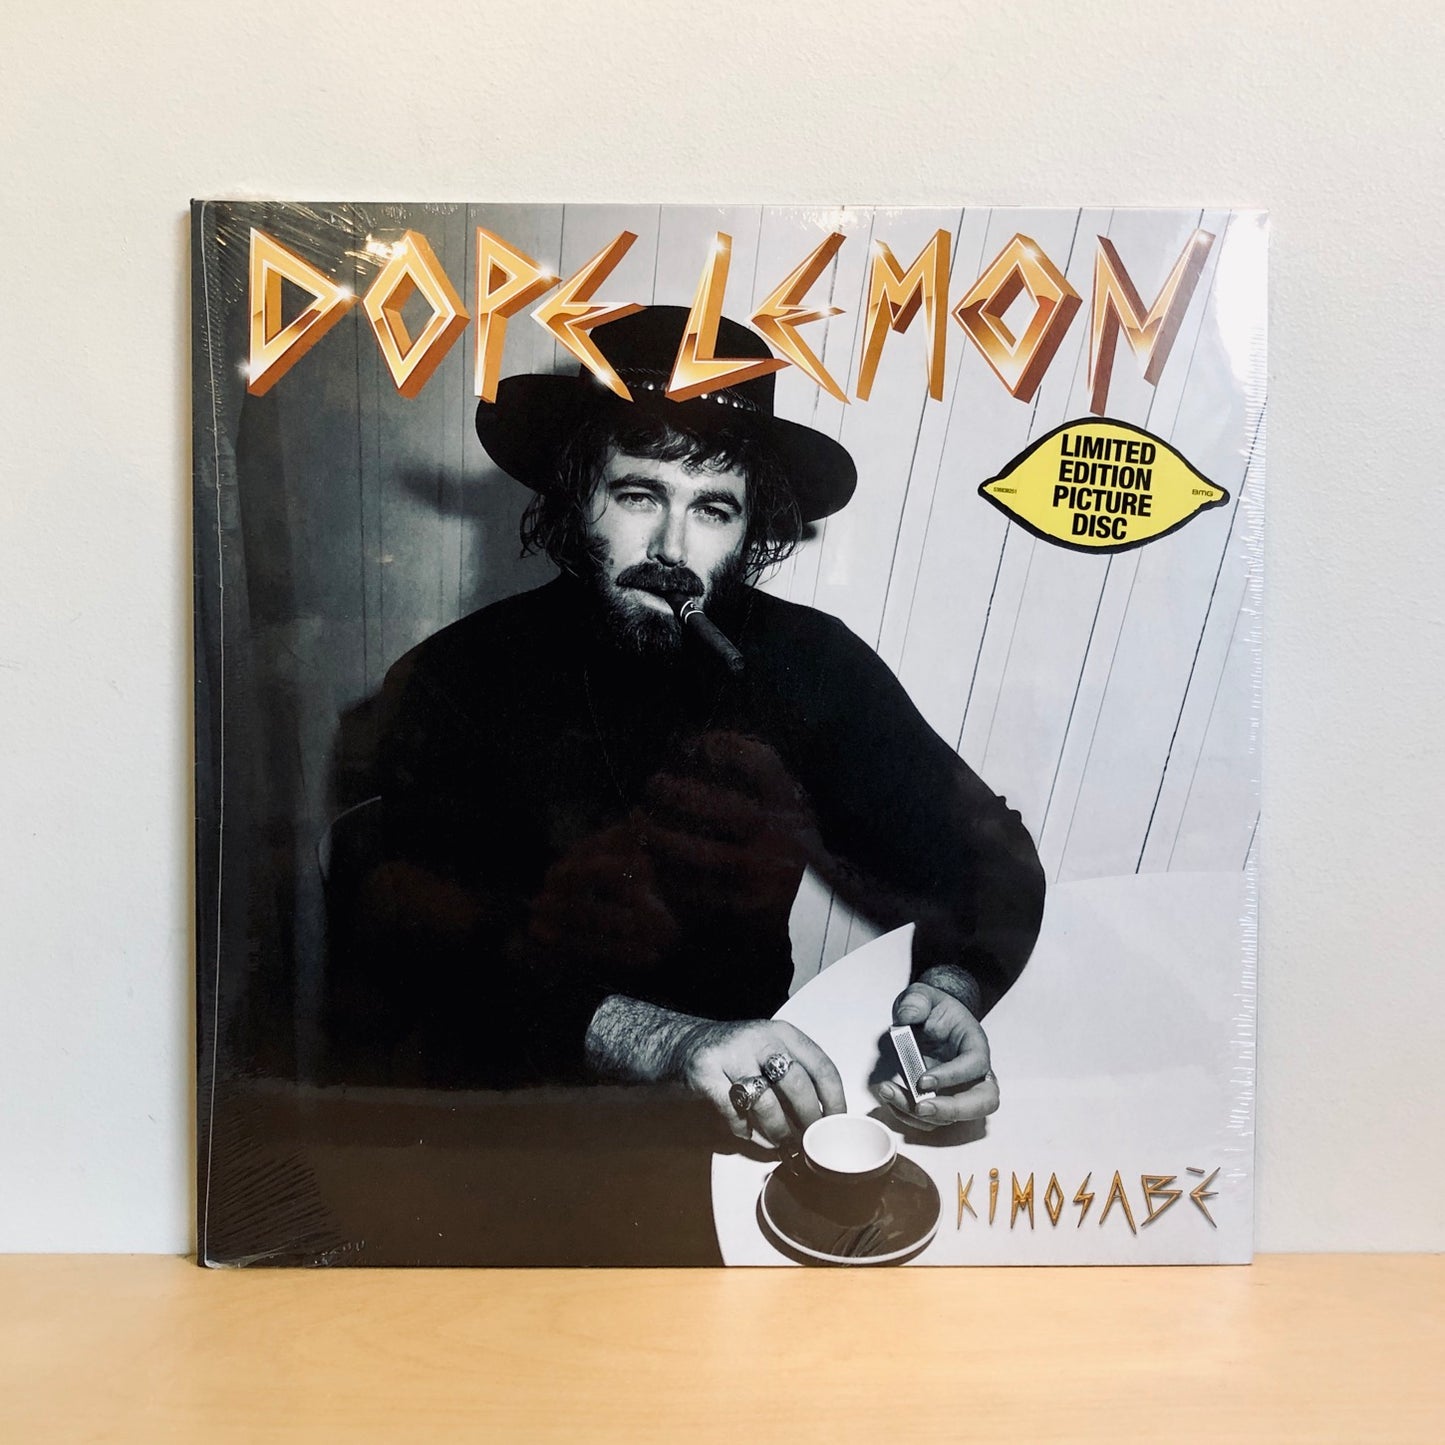 Dope Lemon - Kimosabé. LP [Ltd Ed Picture Disc Vinyl]